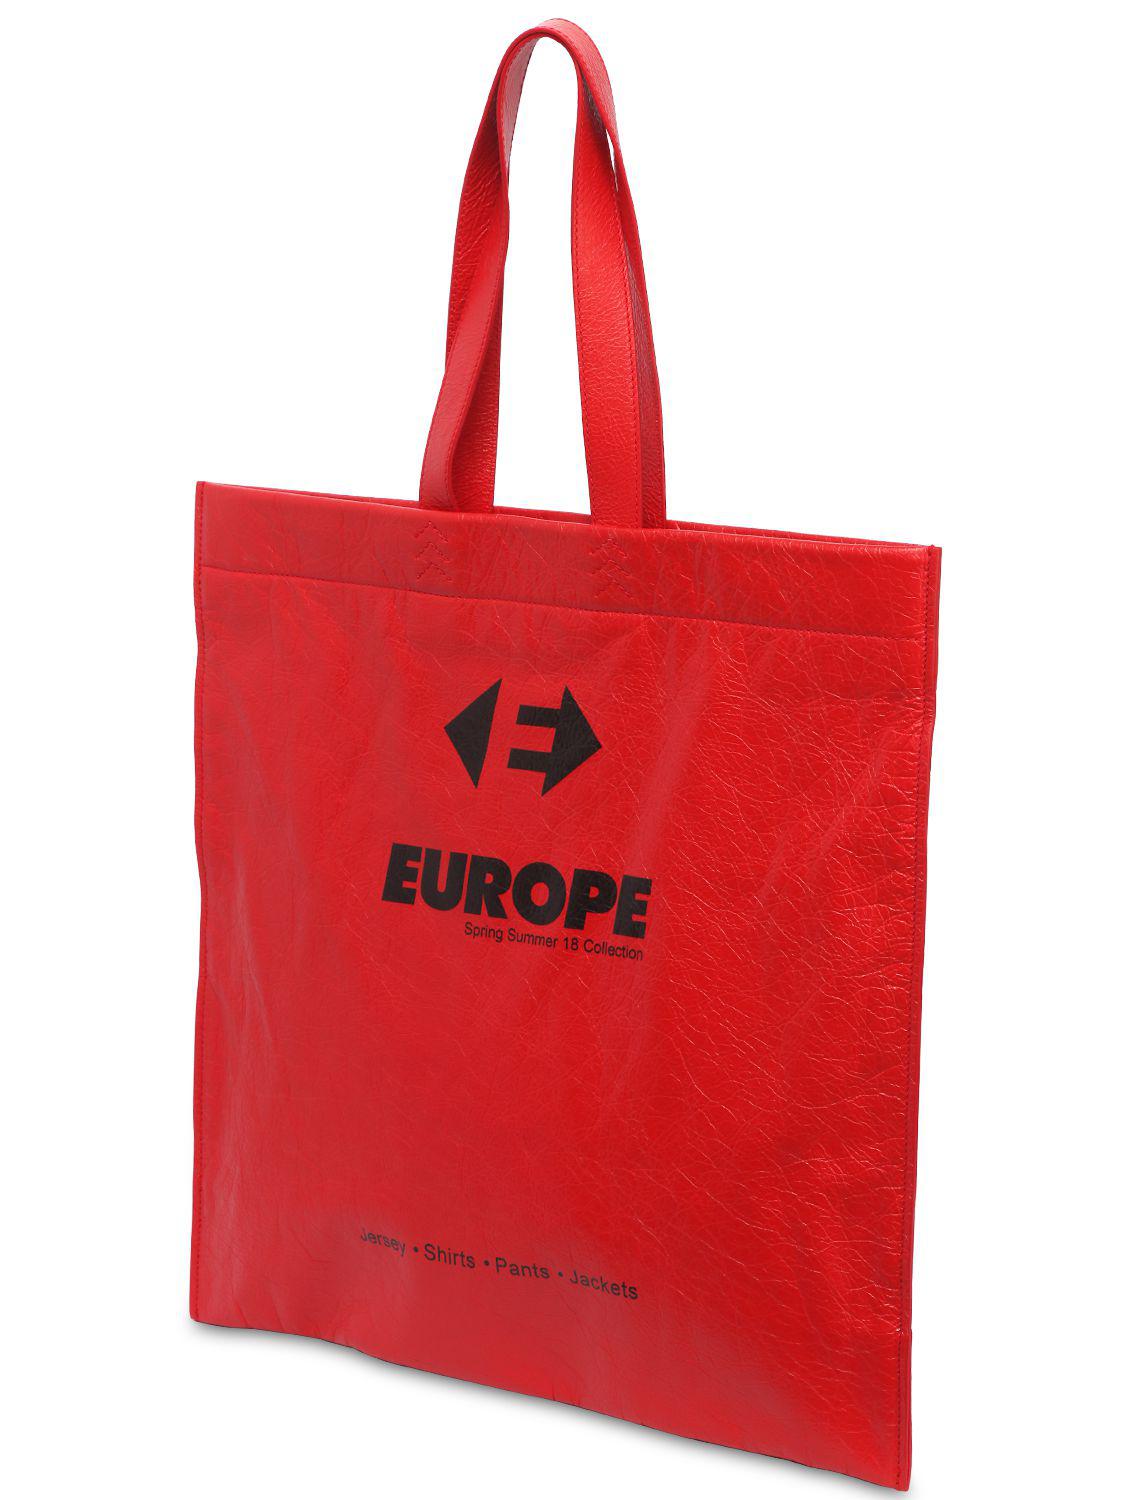 balenciaga bag in europe